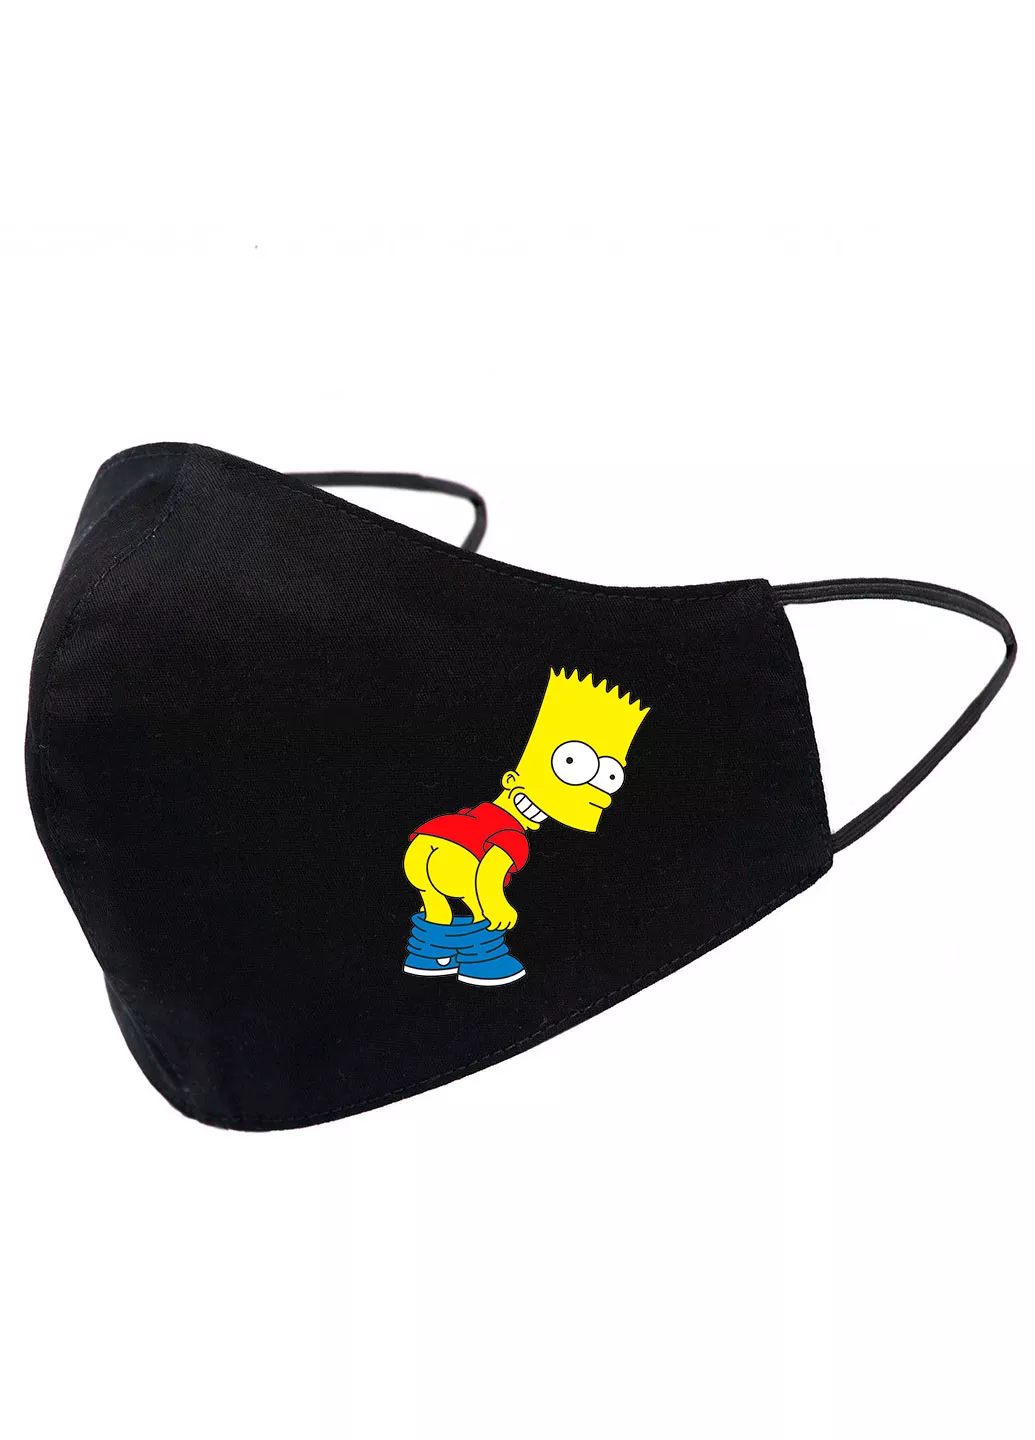 Черная маска для лица - Барт Симпсон